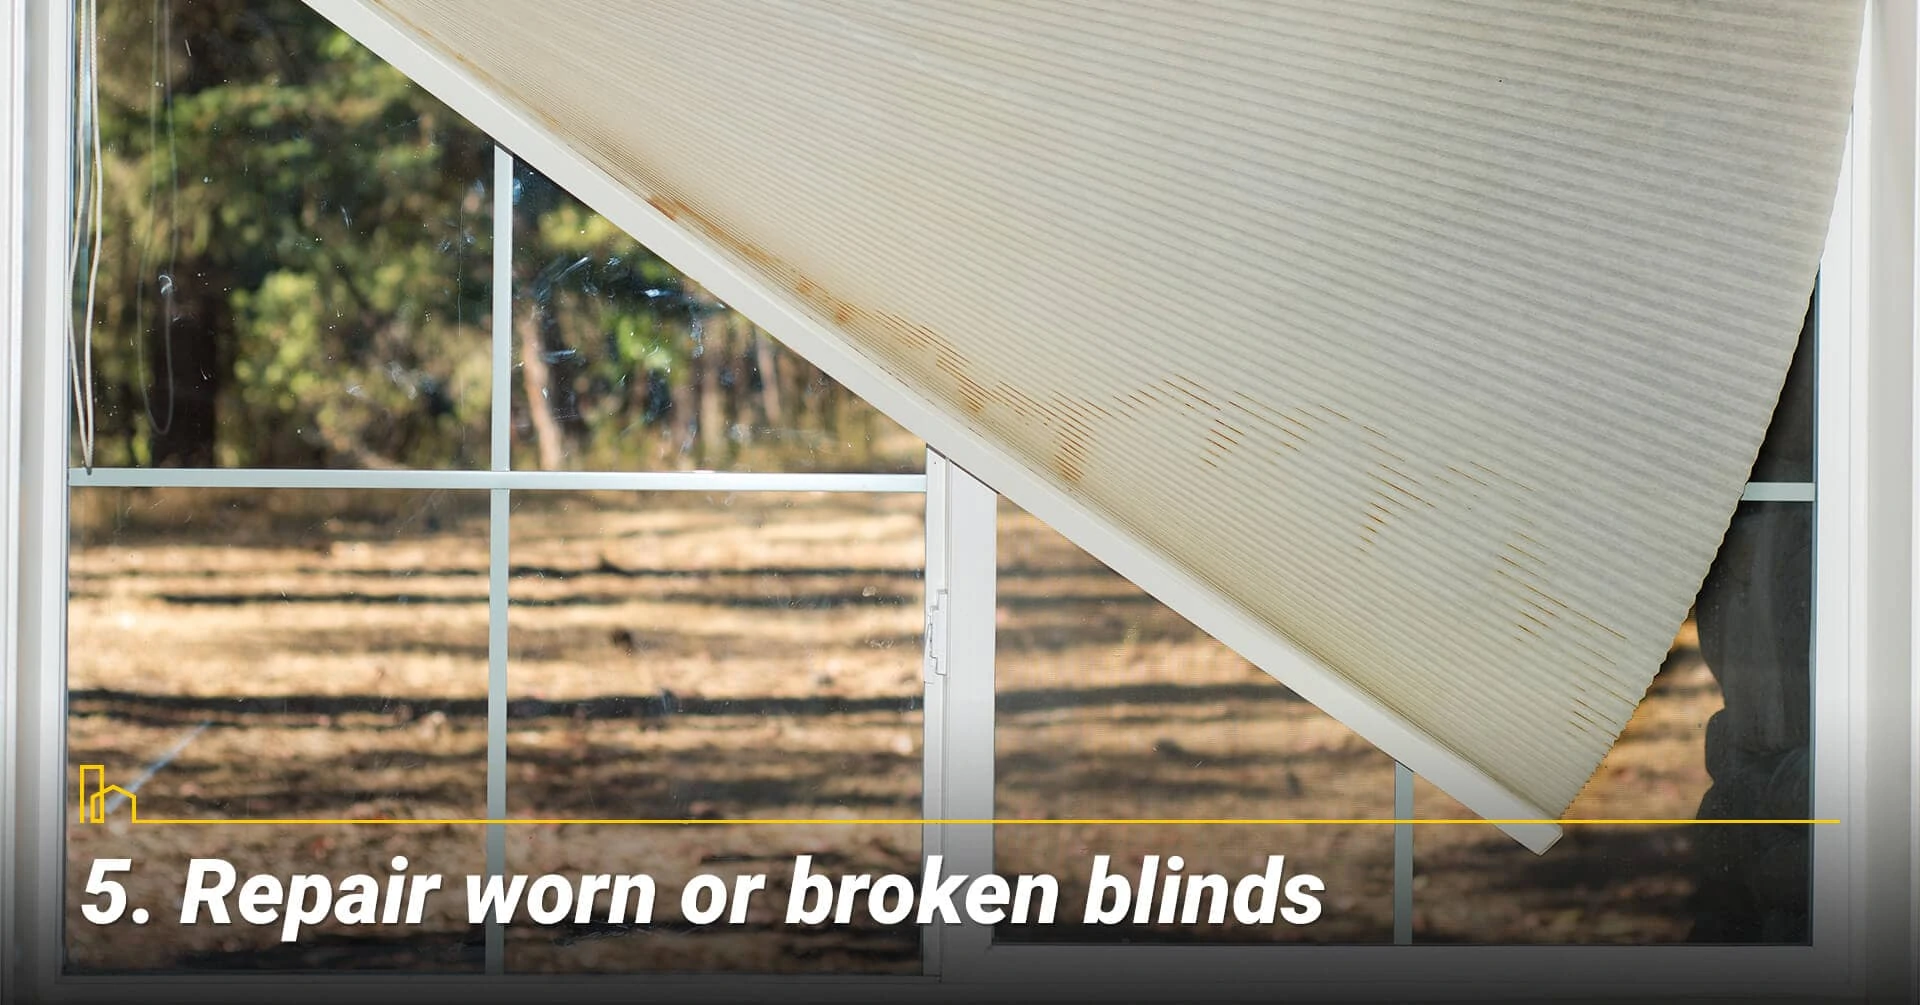 Repair worn or broken blinds, fix broken items around the house